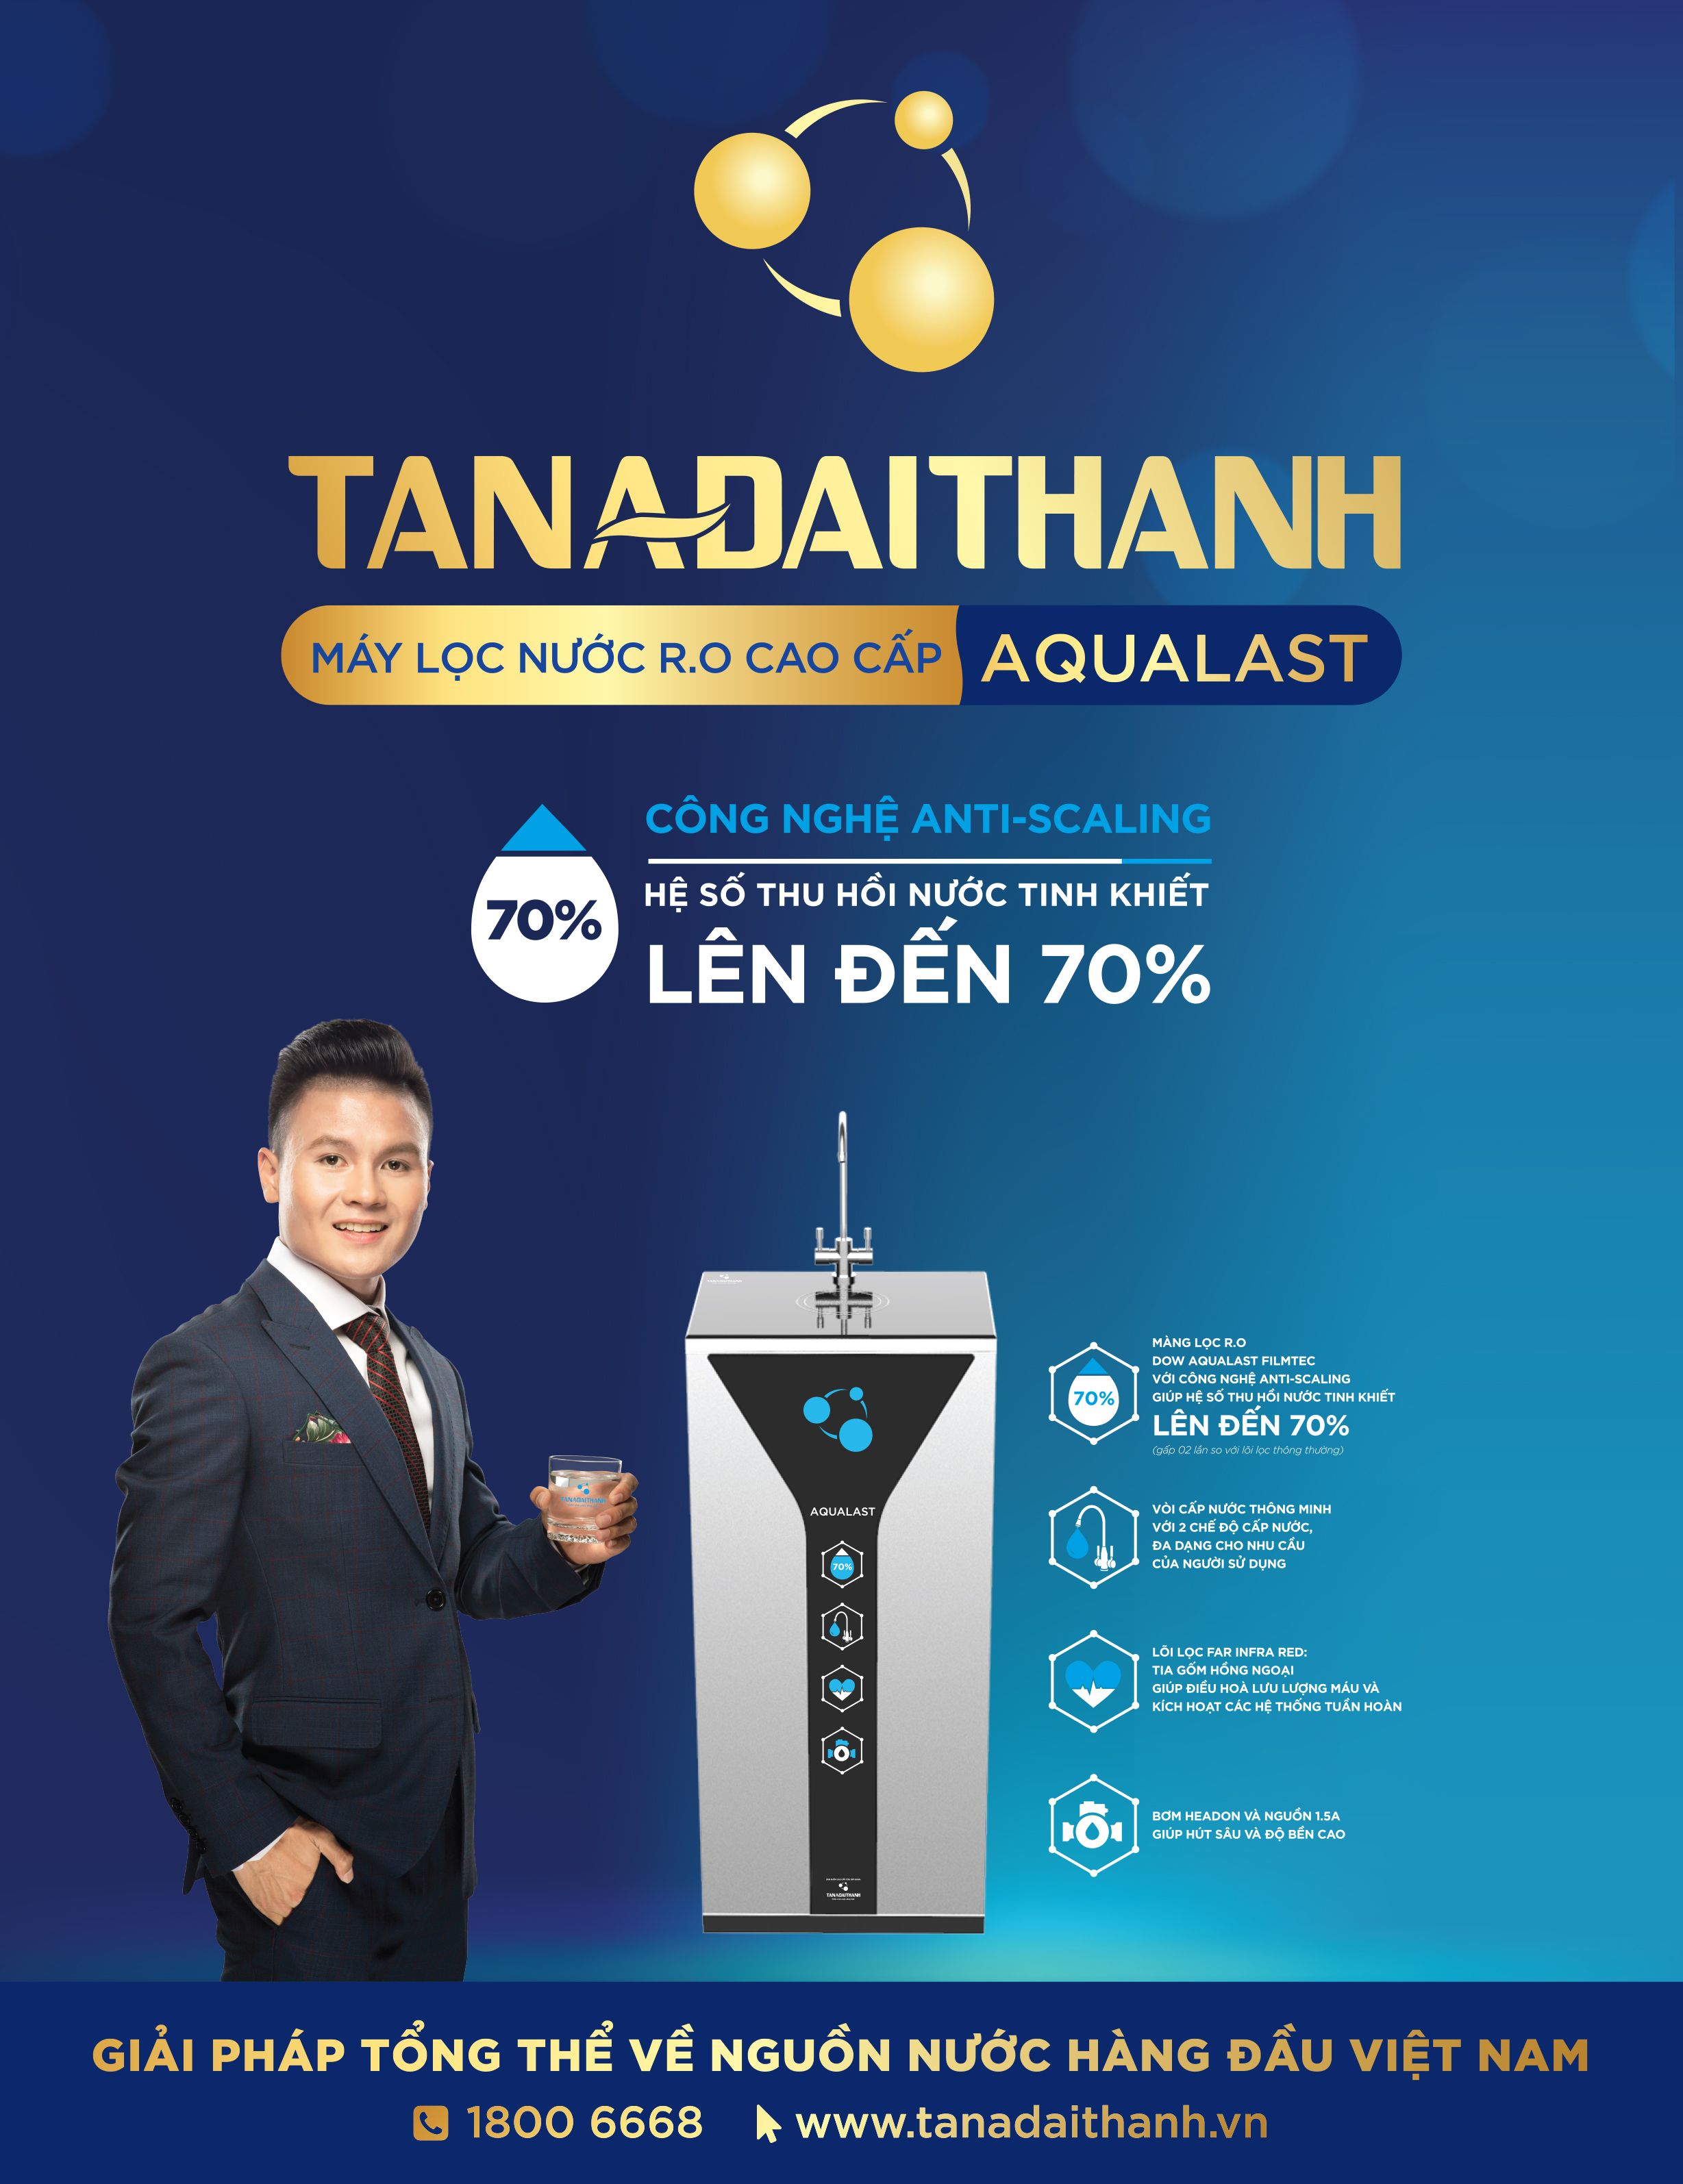 Máy lọc nước R.O Aqualast thế hệ mới của Tập đoàn Tân Á Đại Thành.